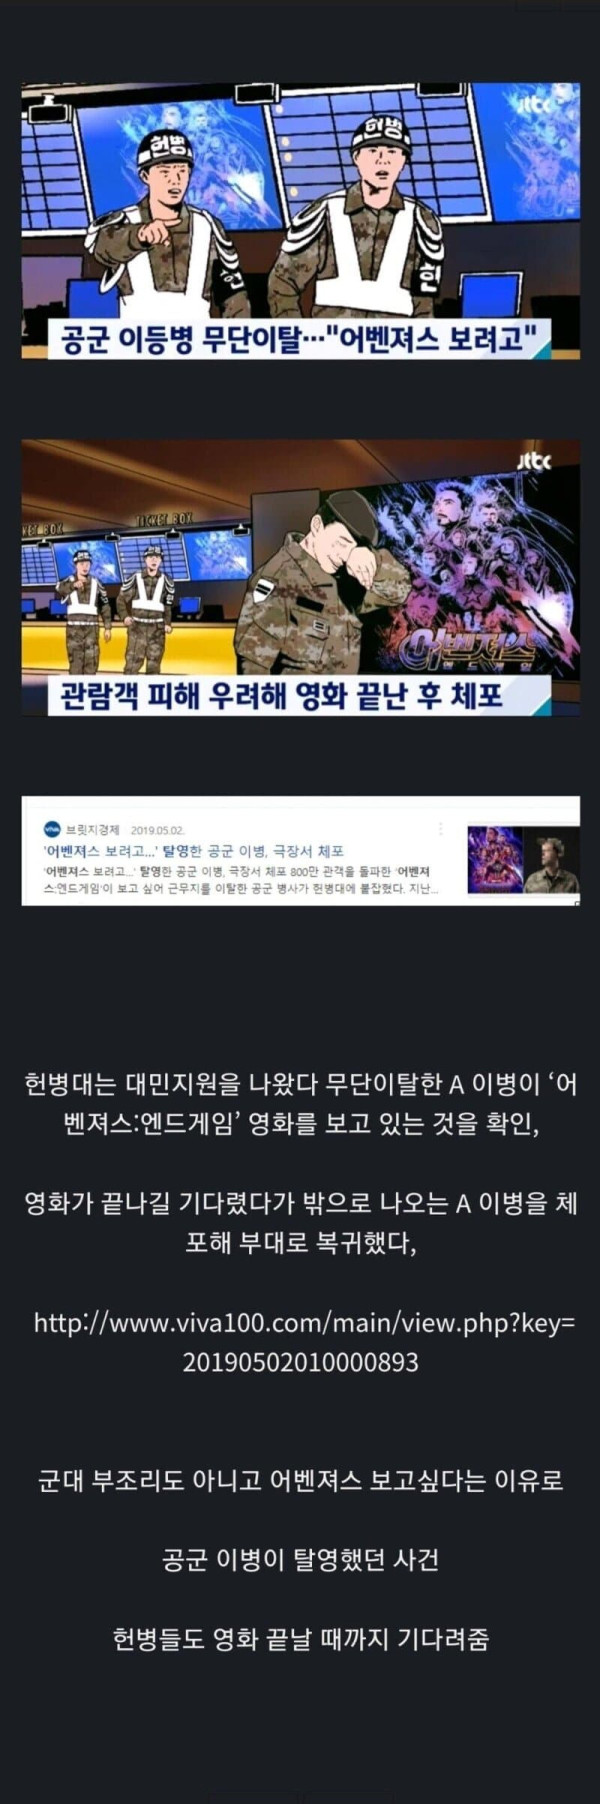 세상은 아직 살만하다 (feat.탈영과기다림)